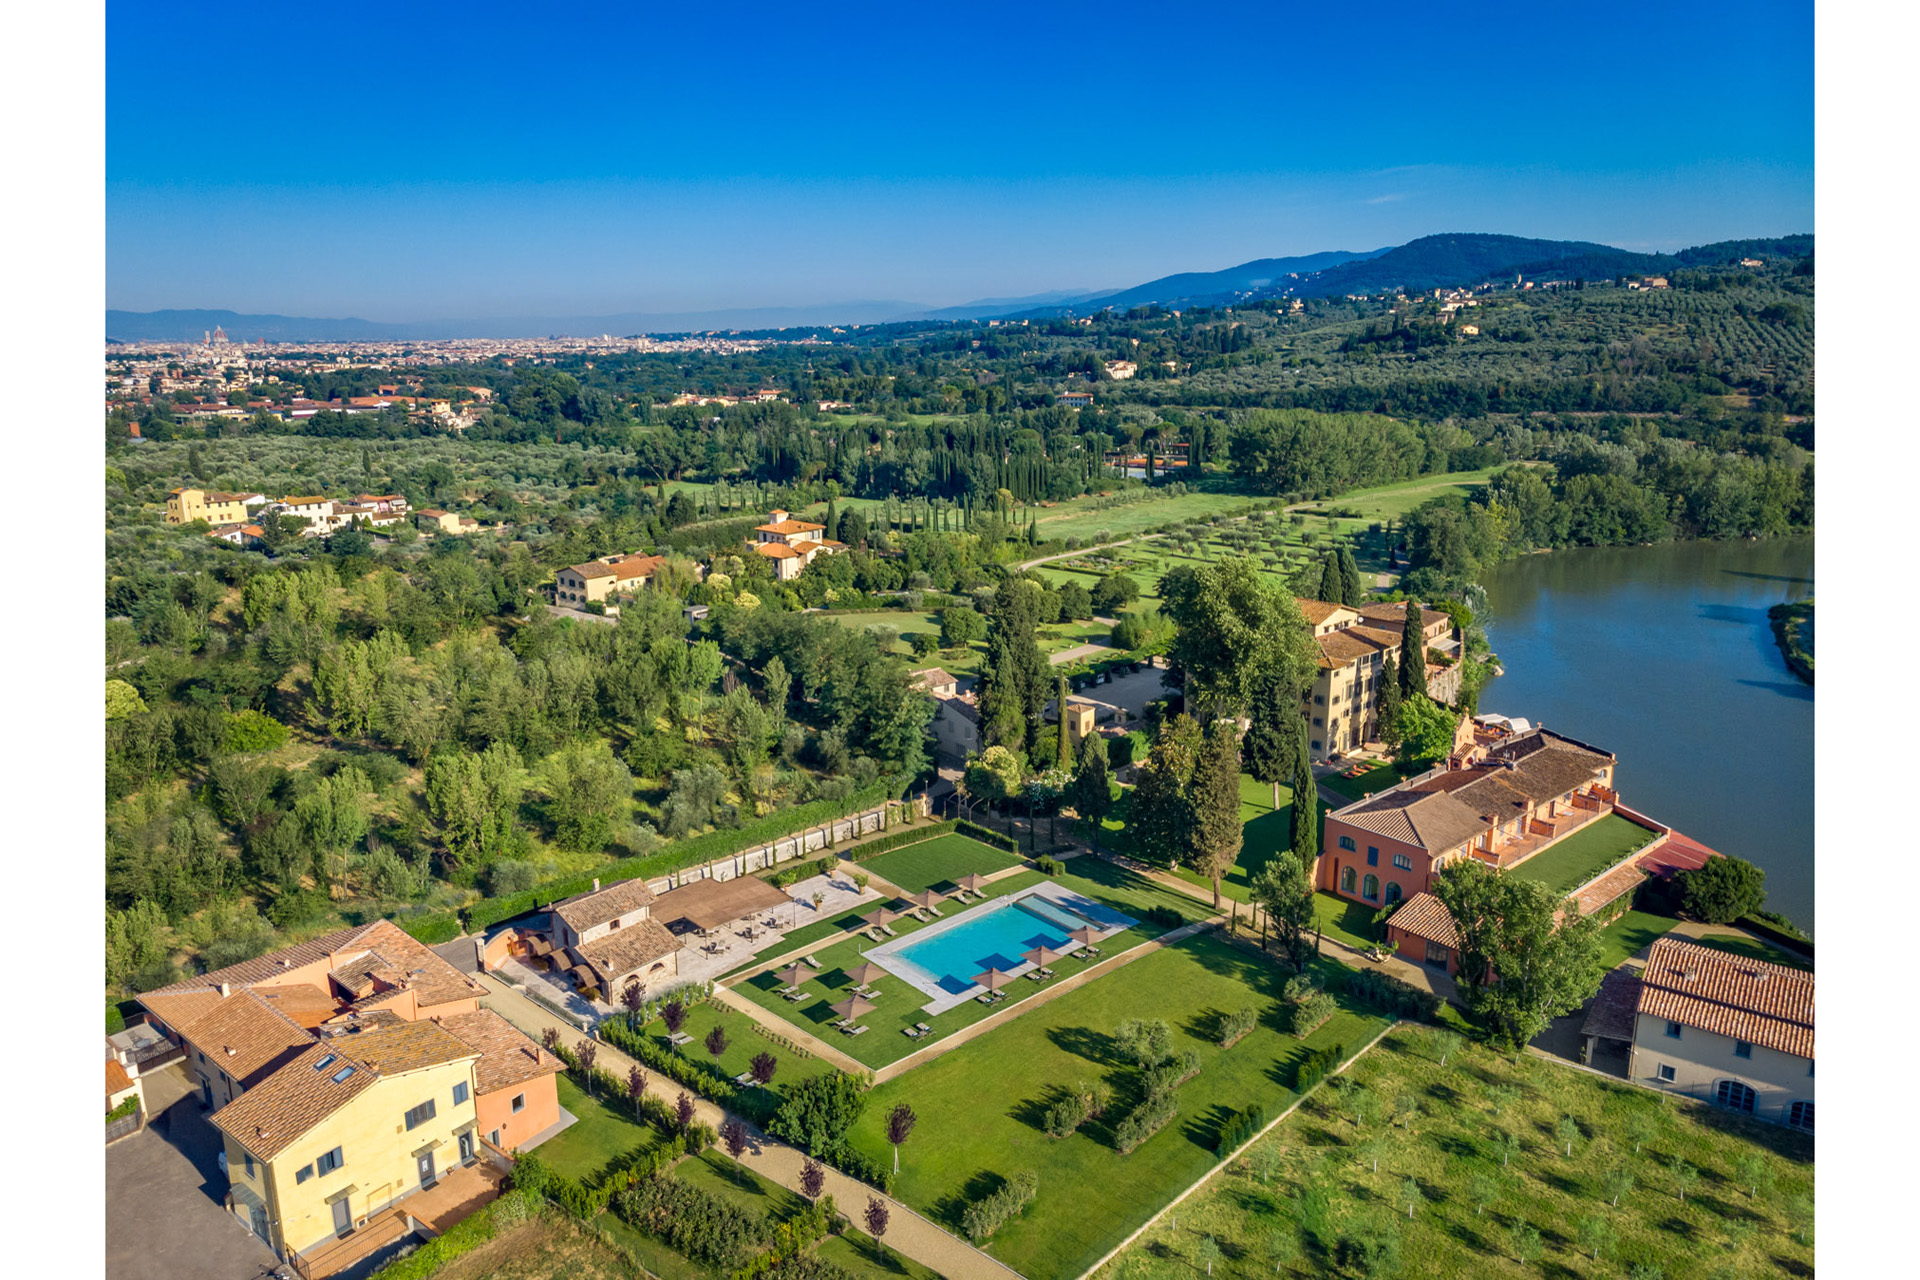 Villa La Massa - Arno River and Chianti hills